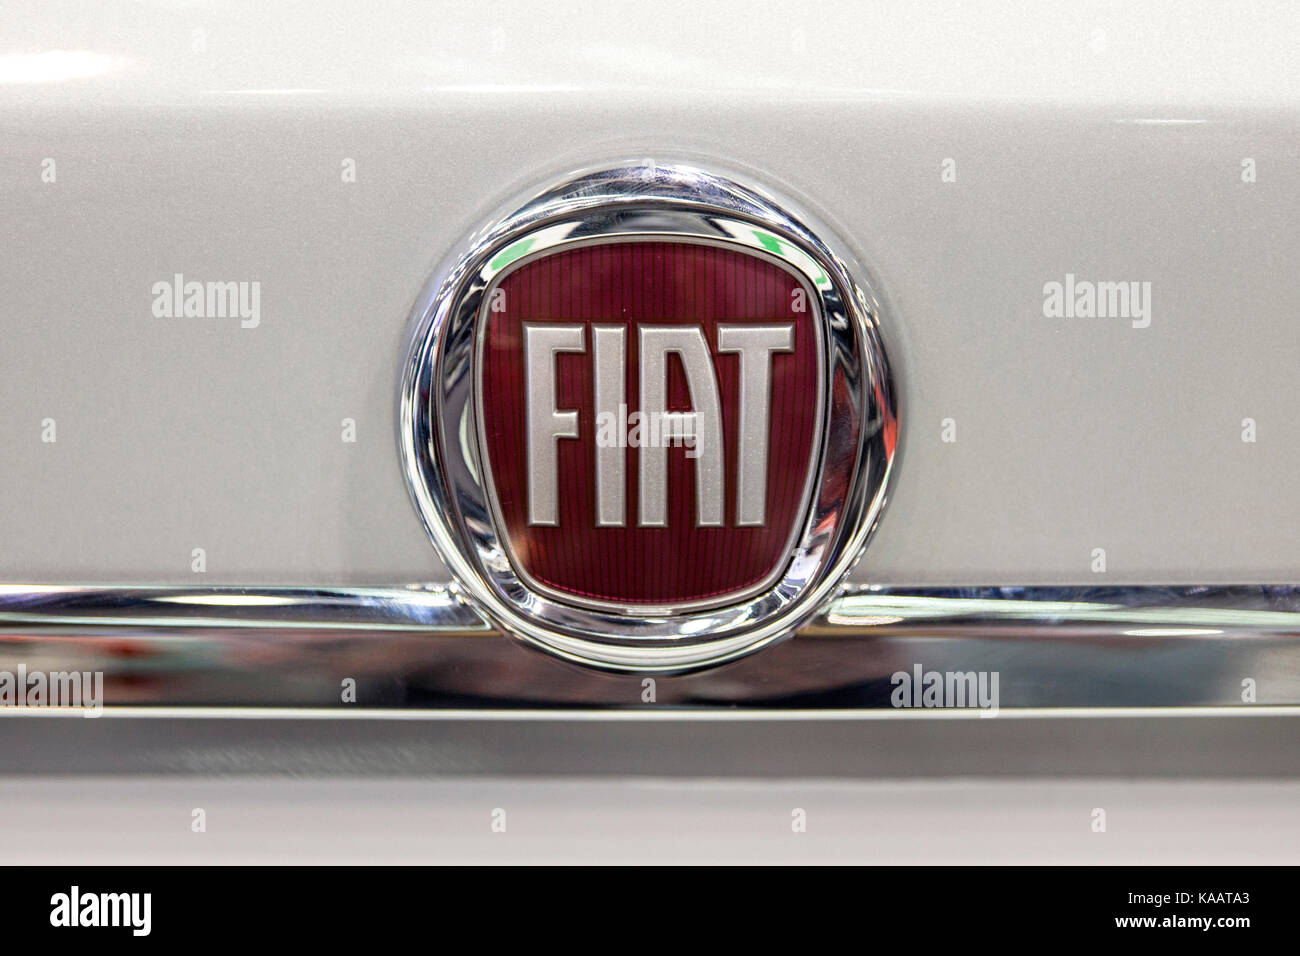 Dettaglio della Fiat auto a Belgrado in Serbia. Fiat o la Fabbrica Italiana Automobili Torino è stata fondata nel 1899. Foto Stock